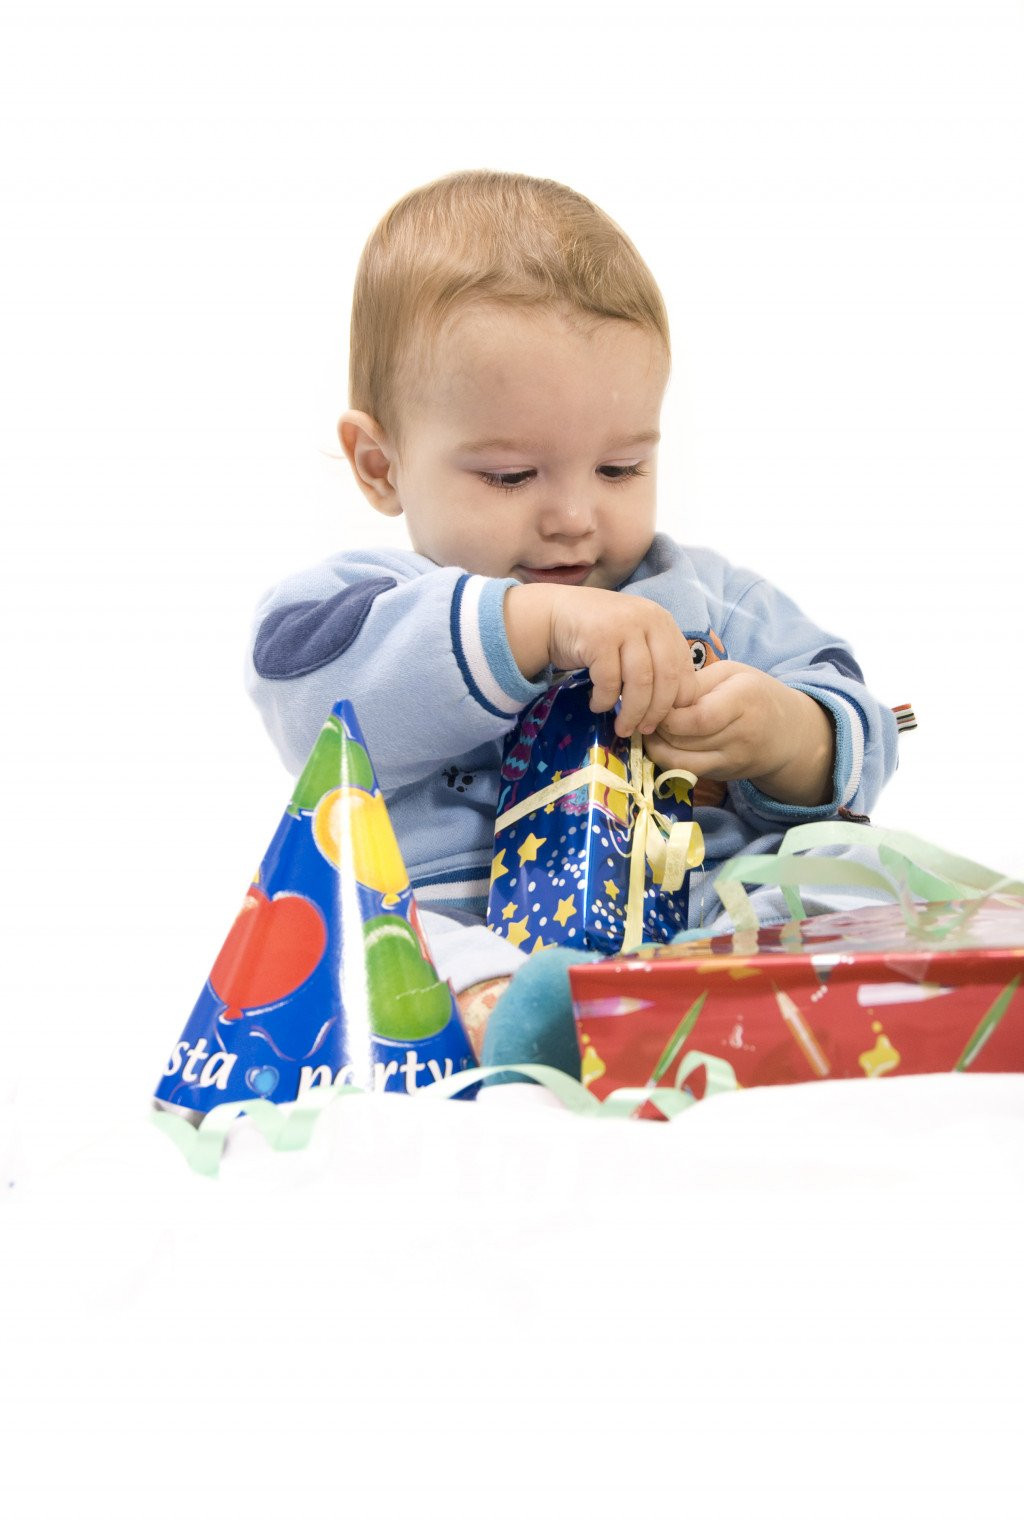 Birthday Gift Ideas For One Year Old Boy
 Best Birthday and Christmas Gift Ideas for a e Year Old Boy